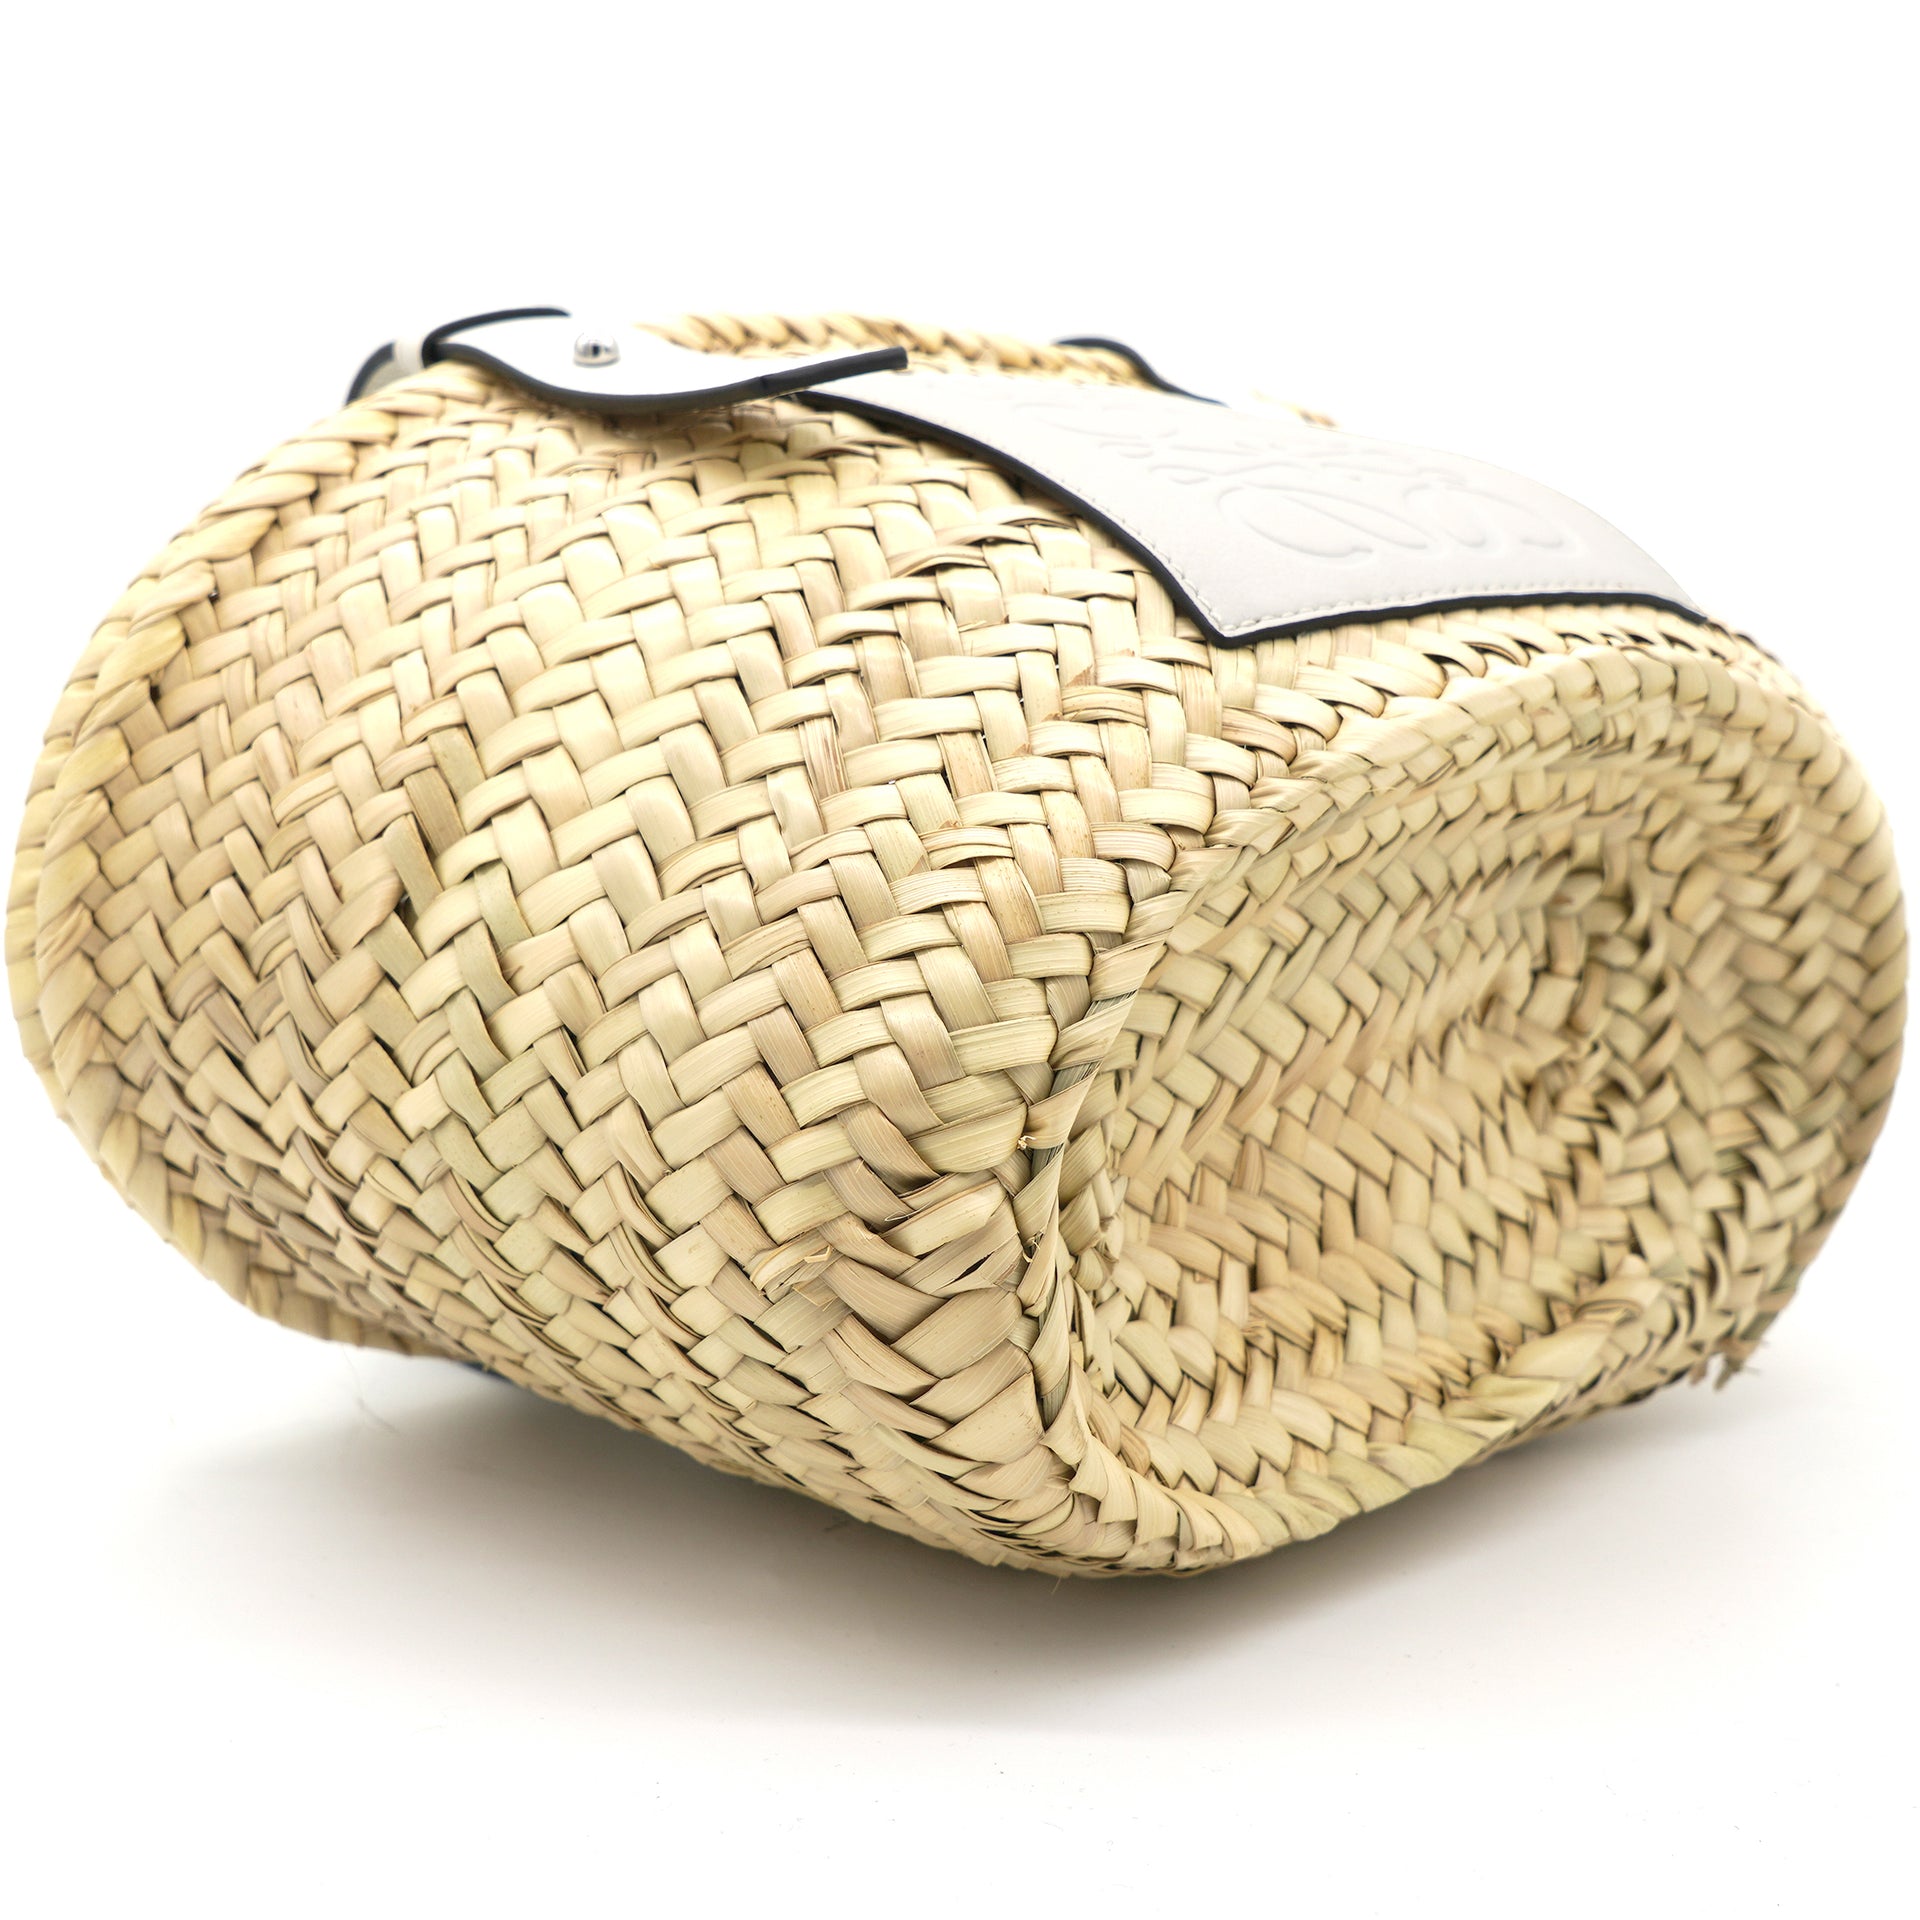 Basket bag tote Loewe White in Wicker - 35972071